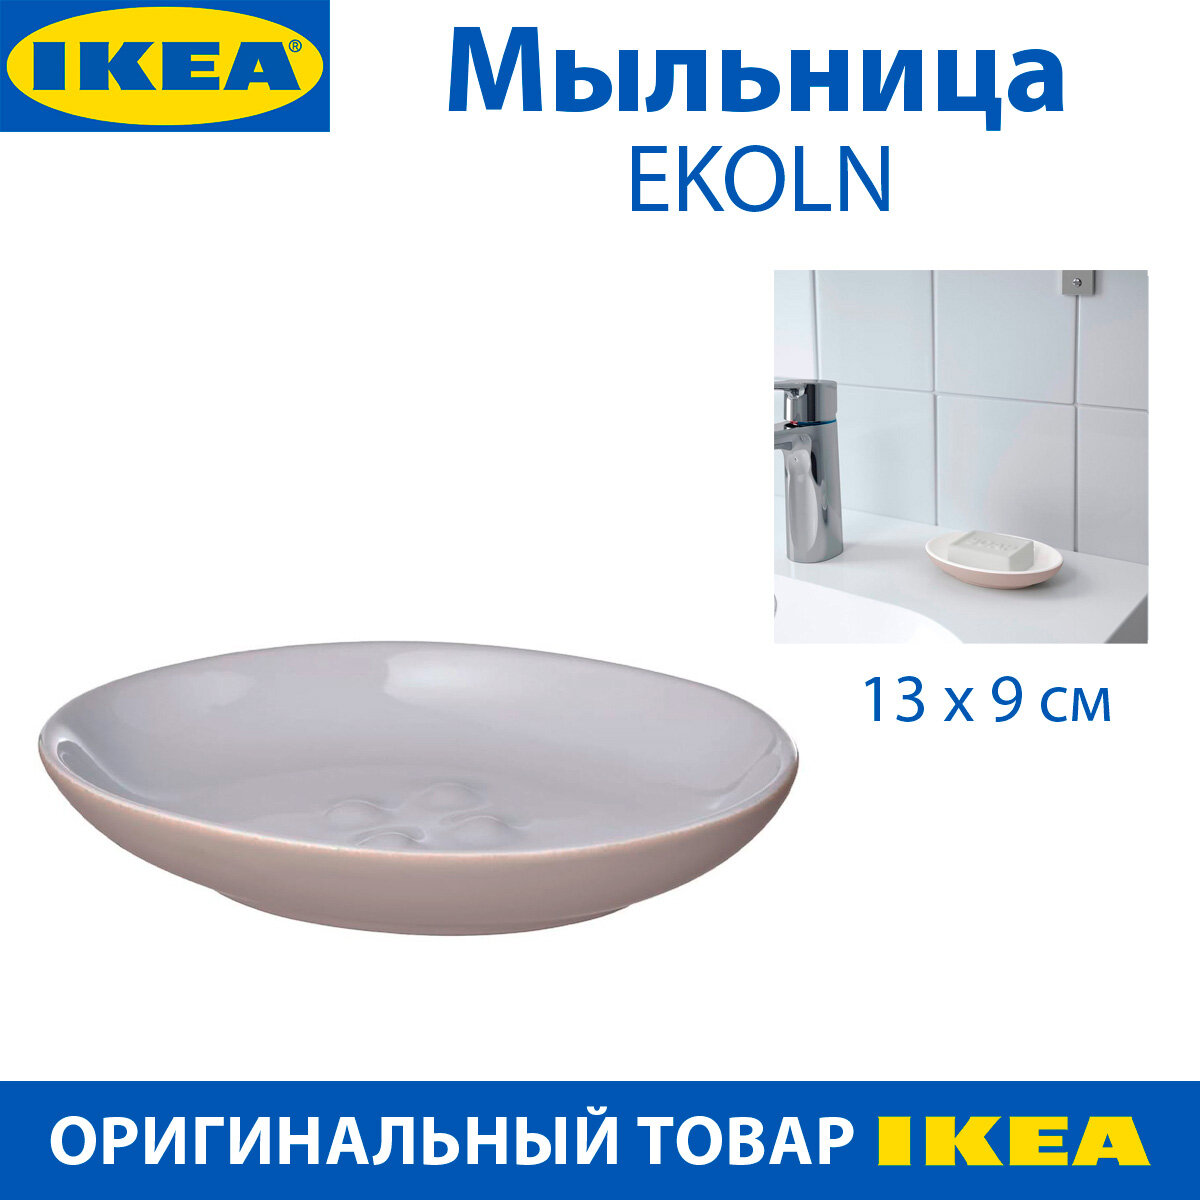 Мыльница IKEA - EKOLN (экольн), бежевая, 13х9 см, 1 шт